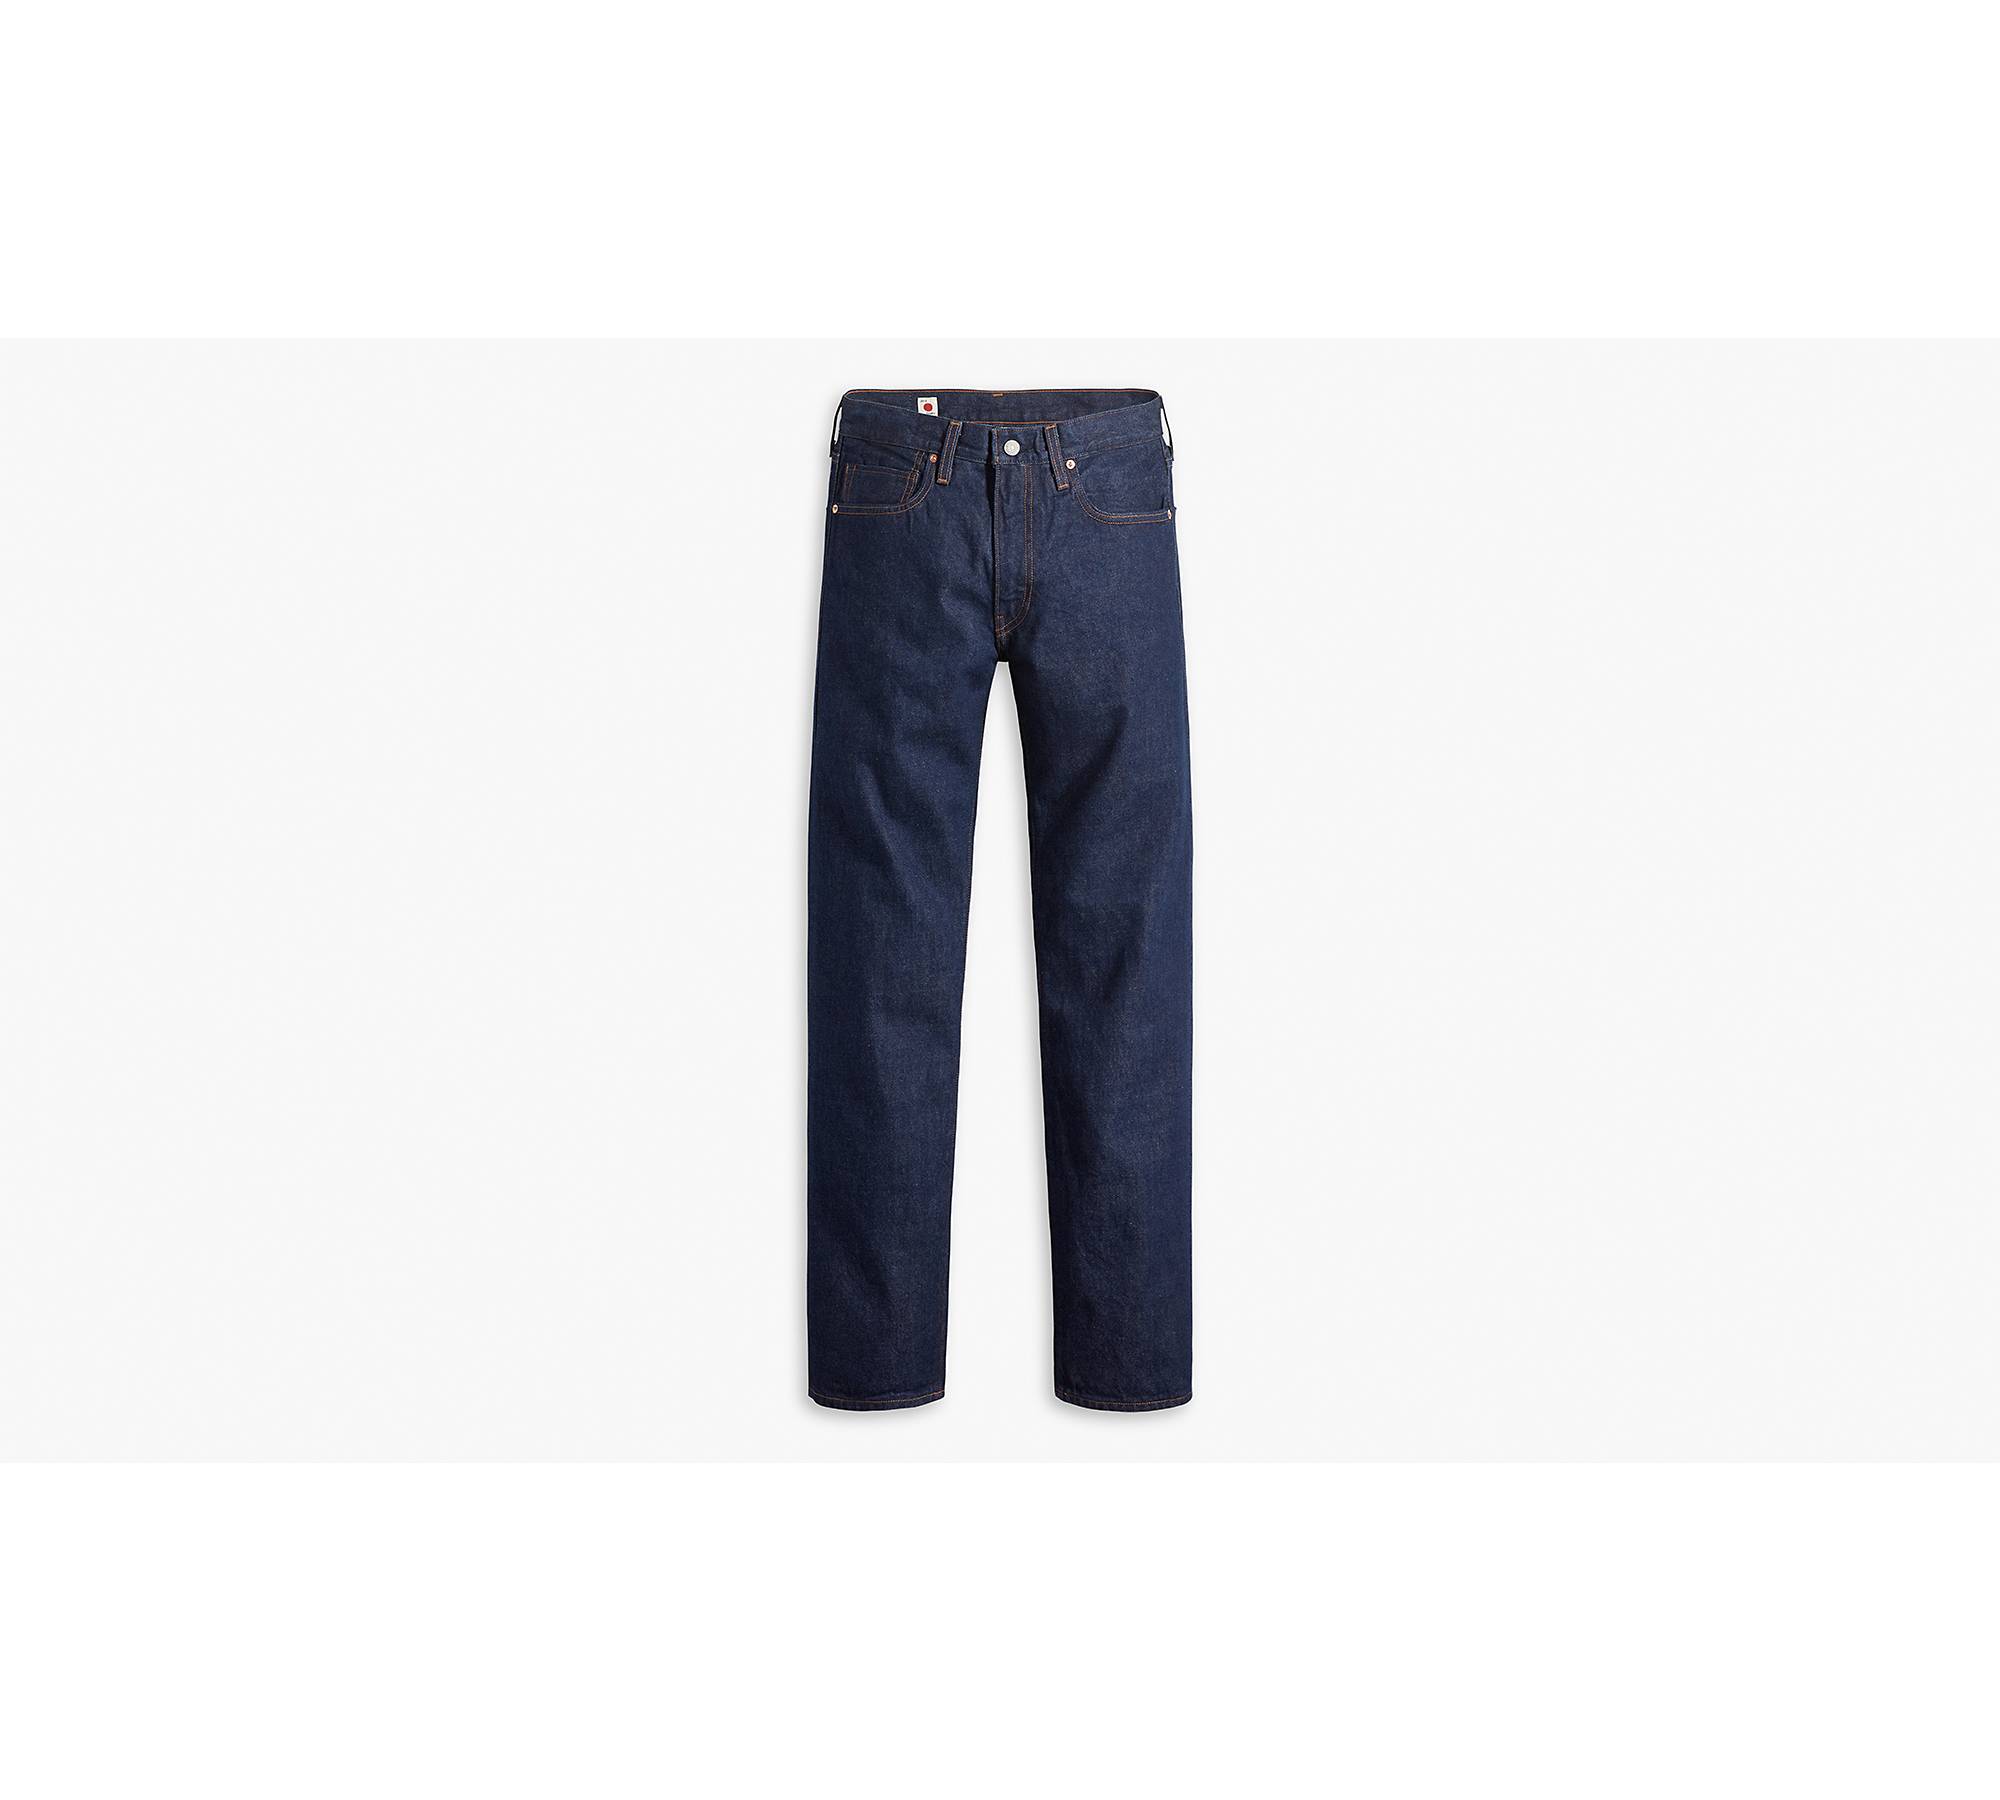 Lima spand Skærm Japanese Selvedge 505™ Regular Fit Men's Jeans - Dark Wash | Levi's® US